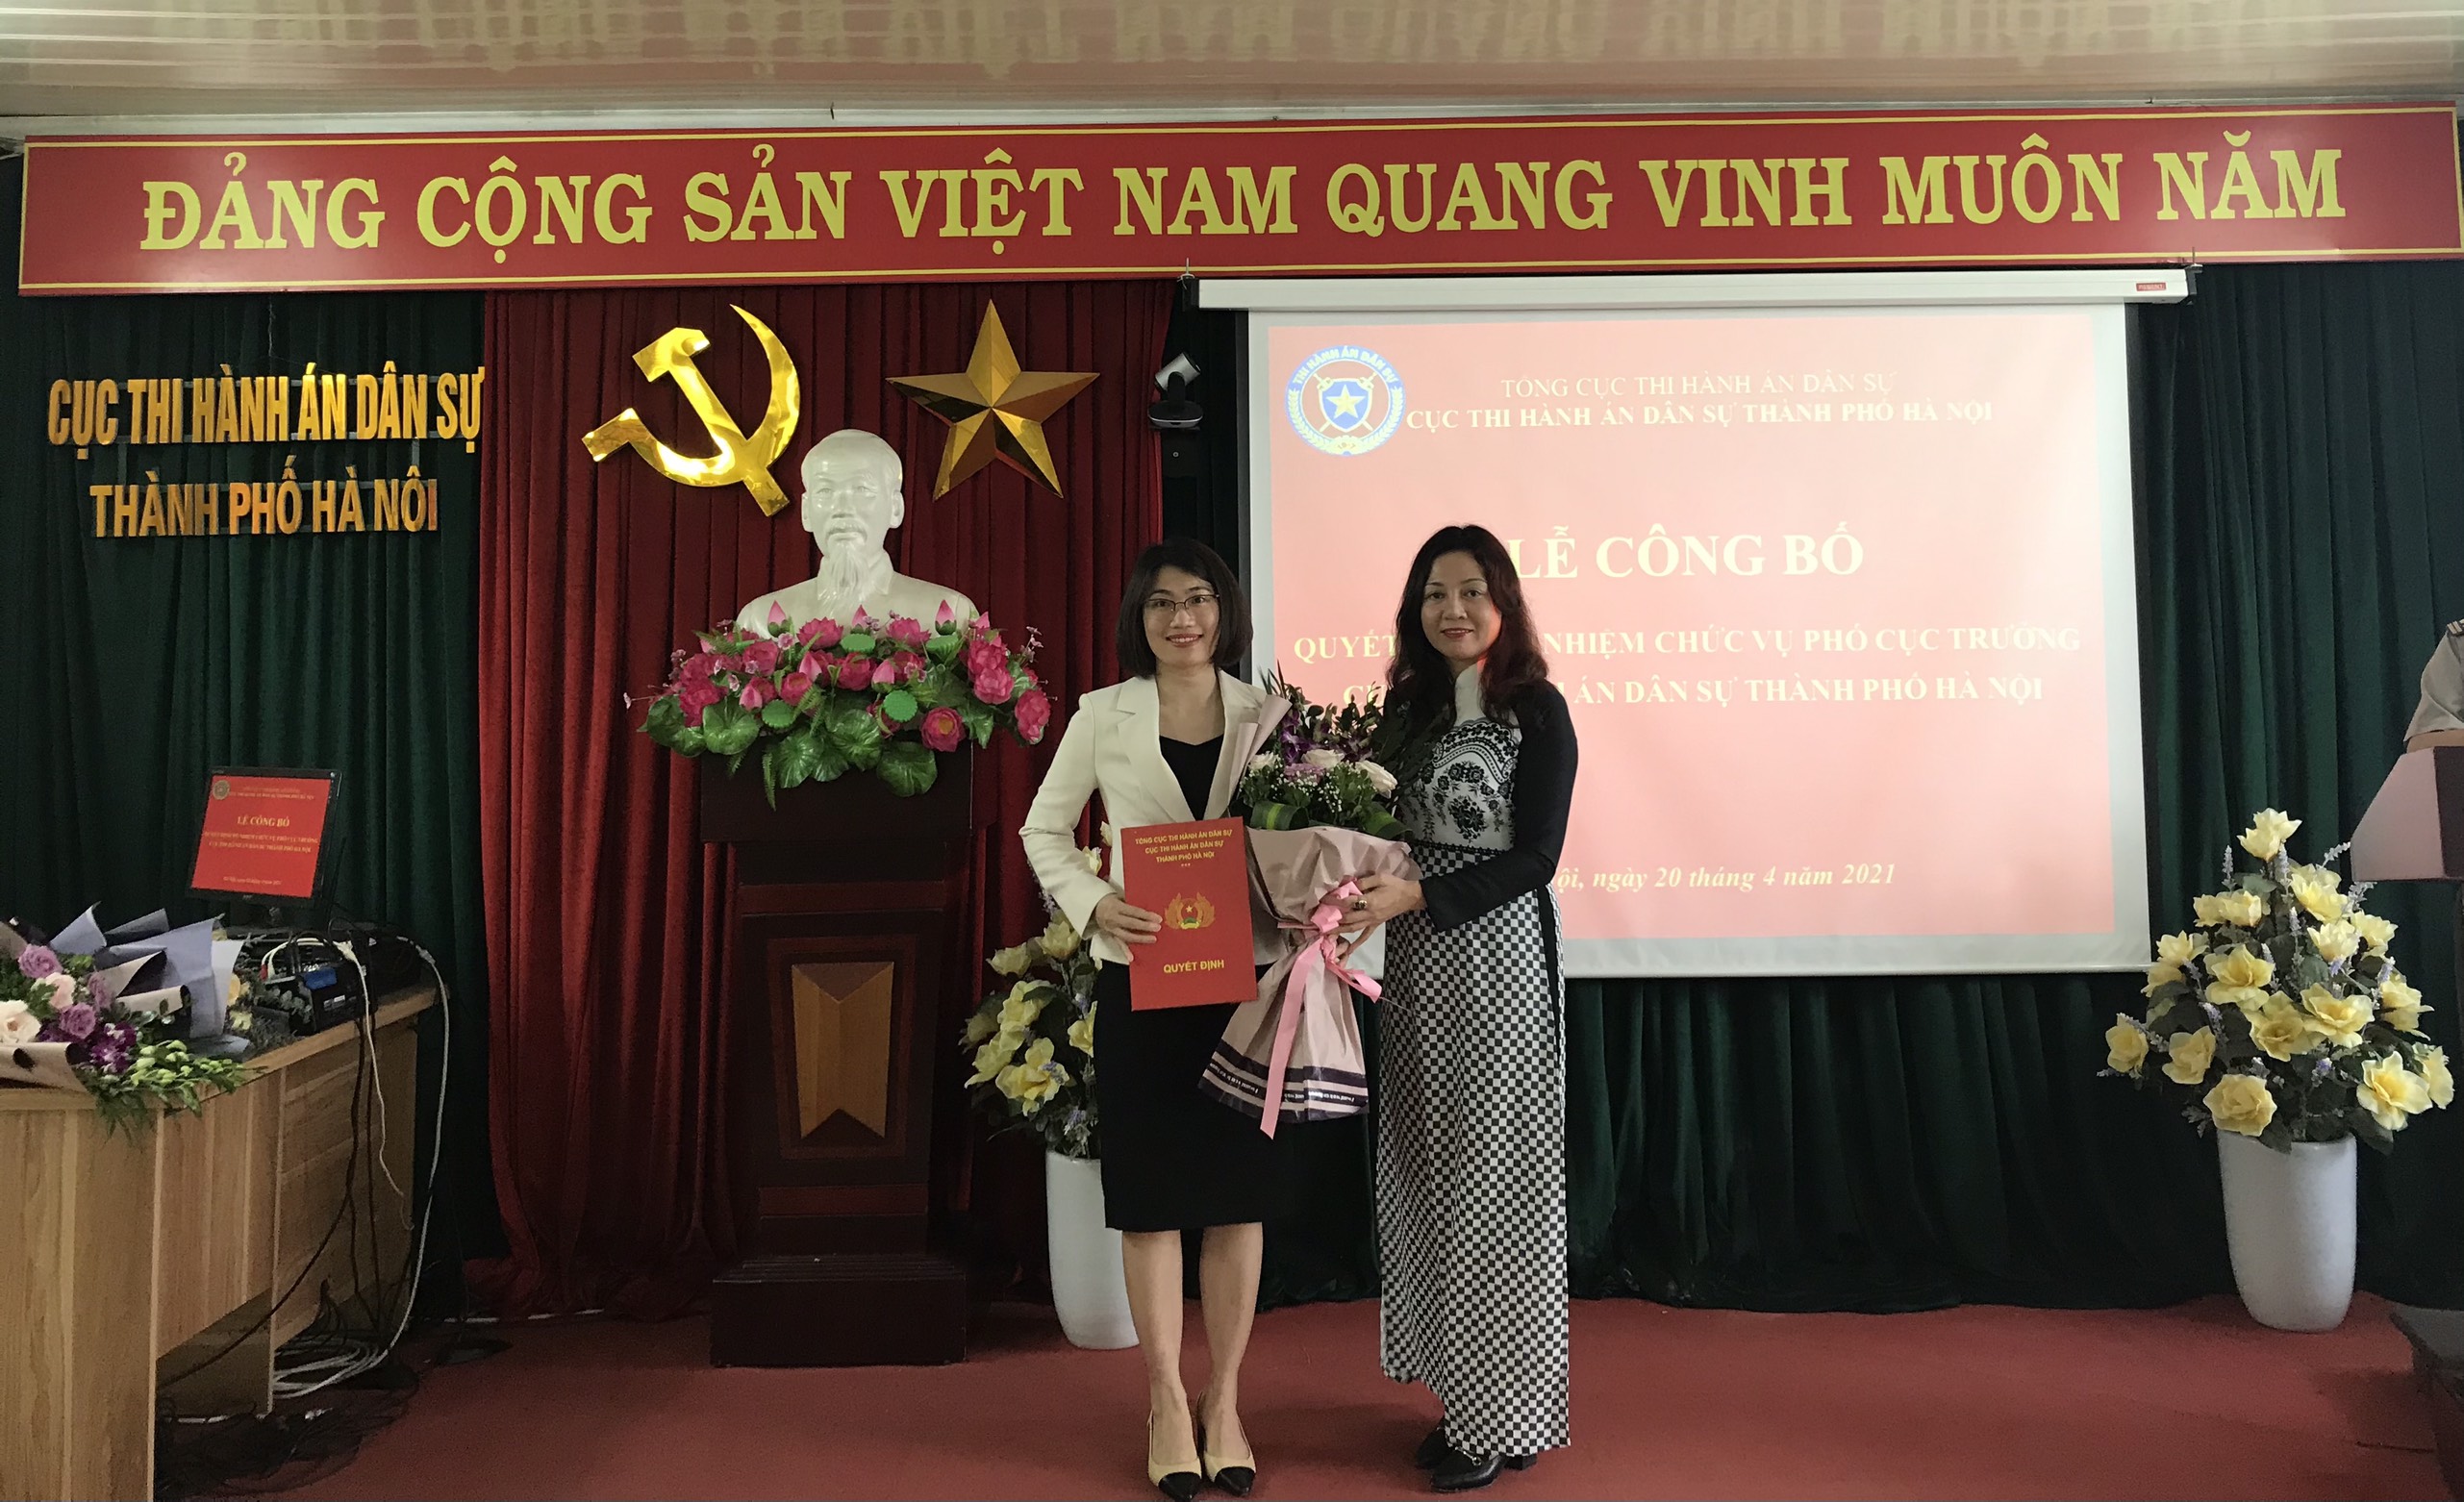 Lễ công bố quyết định bổ nhiệm Phó Cục trưởng Cục Thi hành án dân sự thành phố Hà Nội.